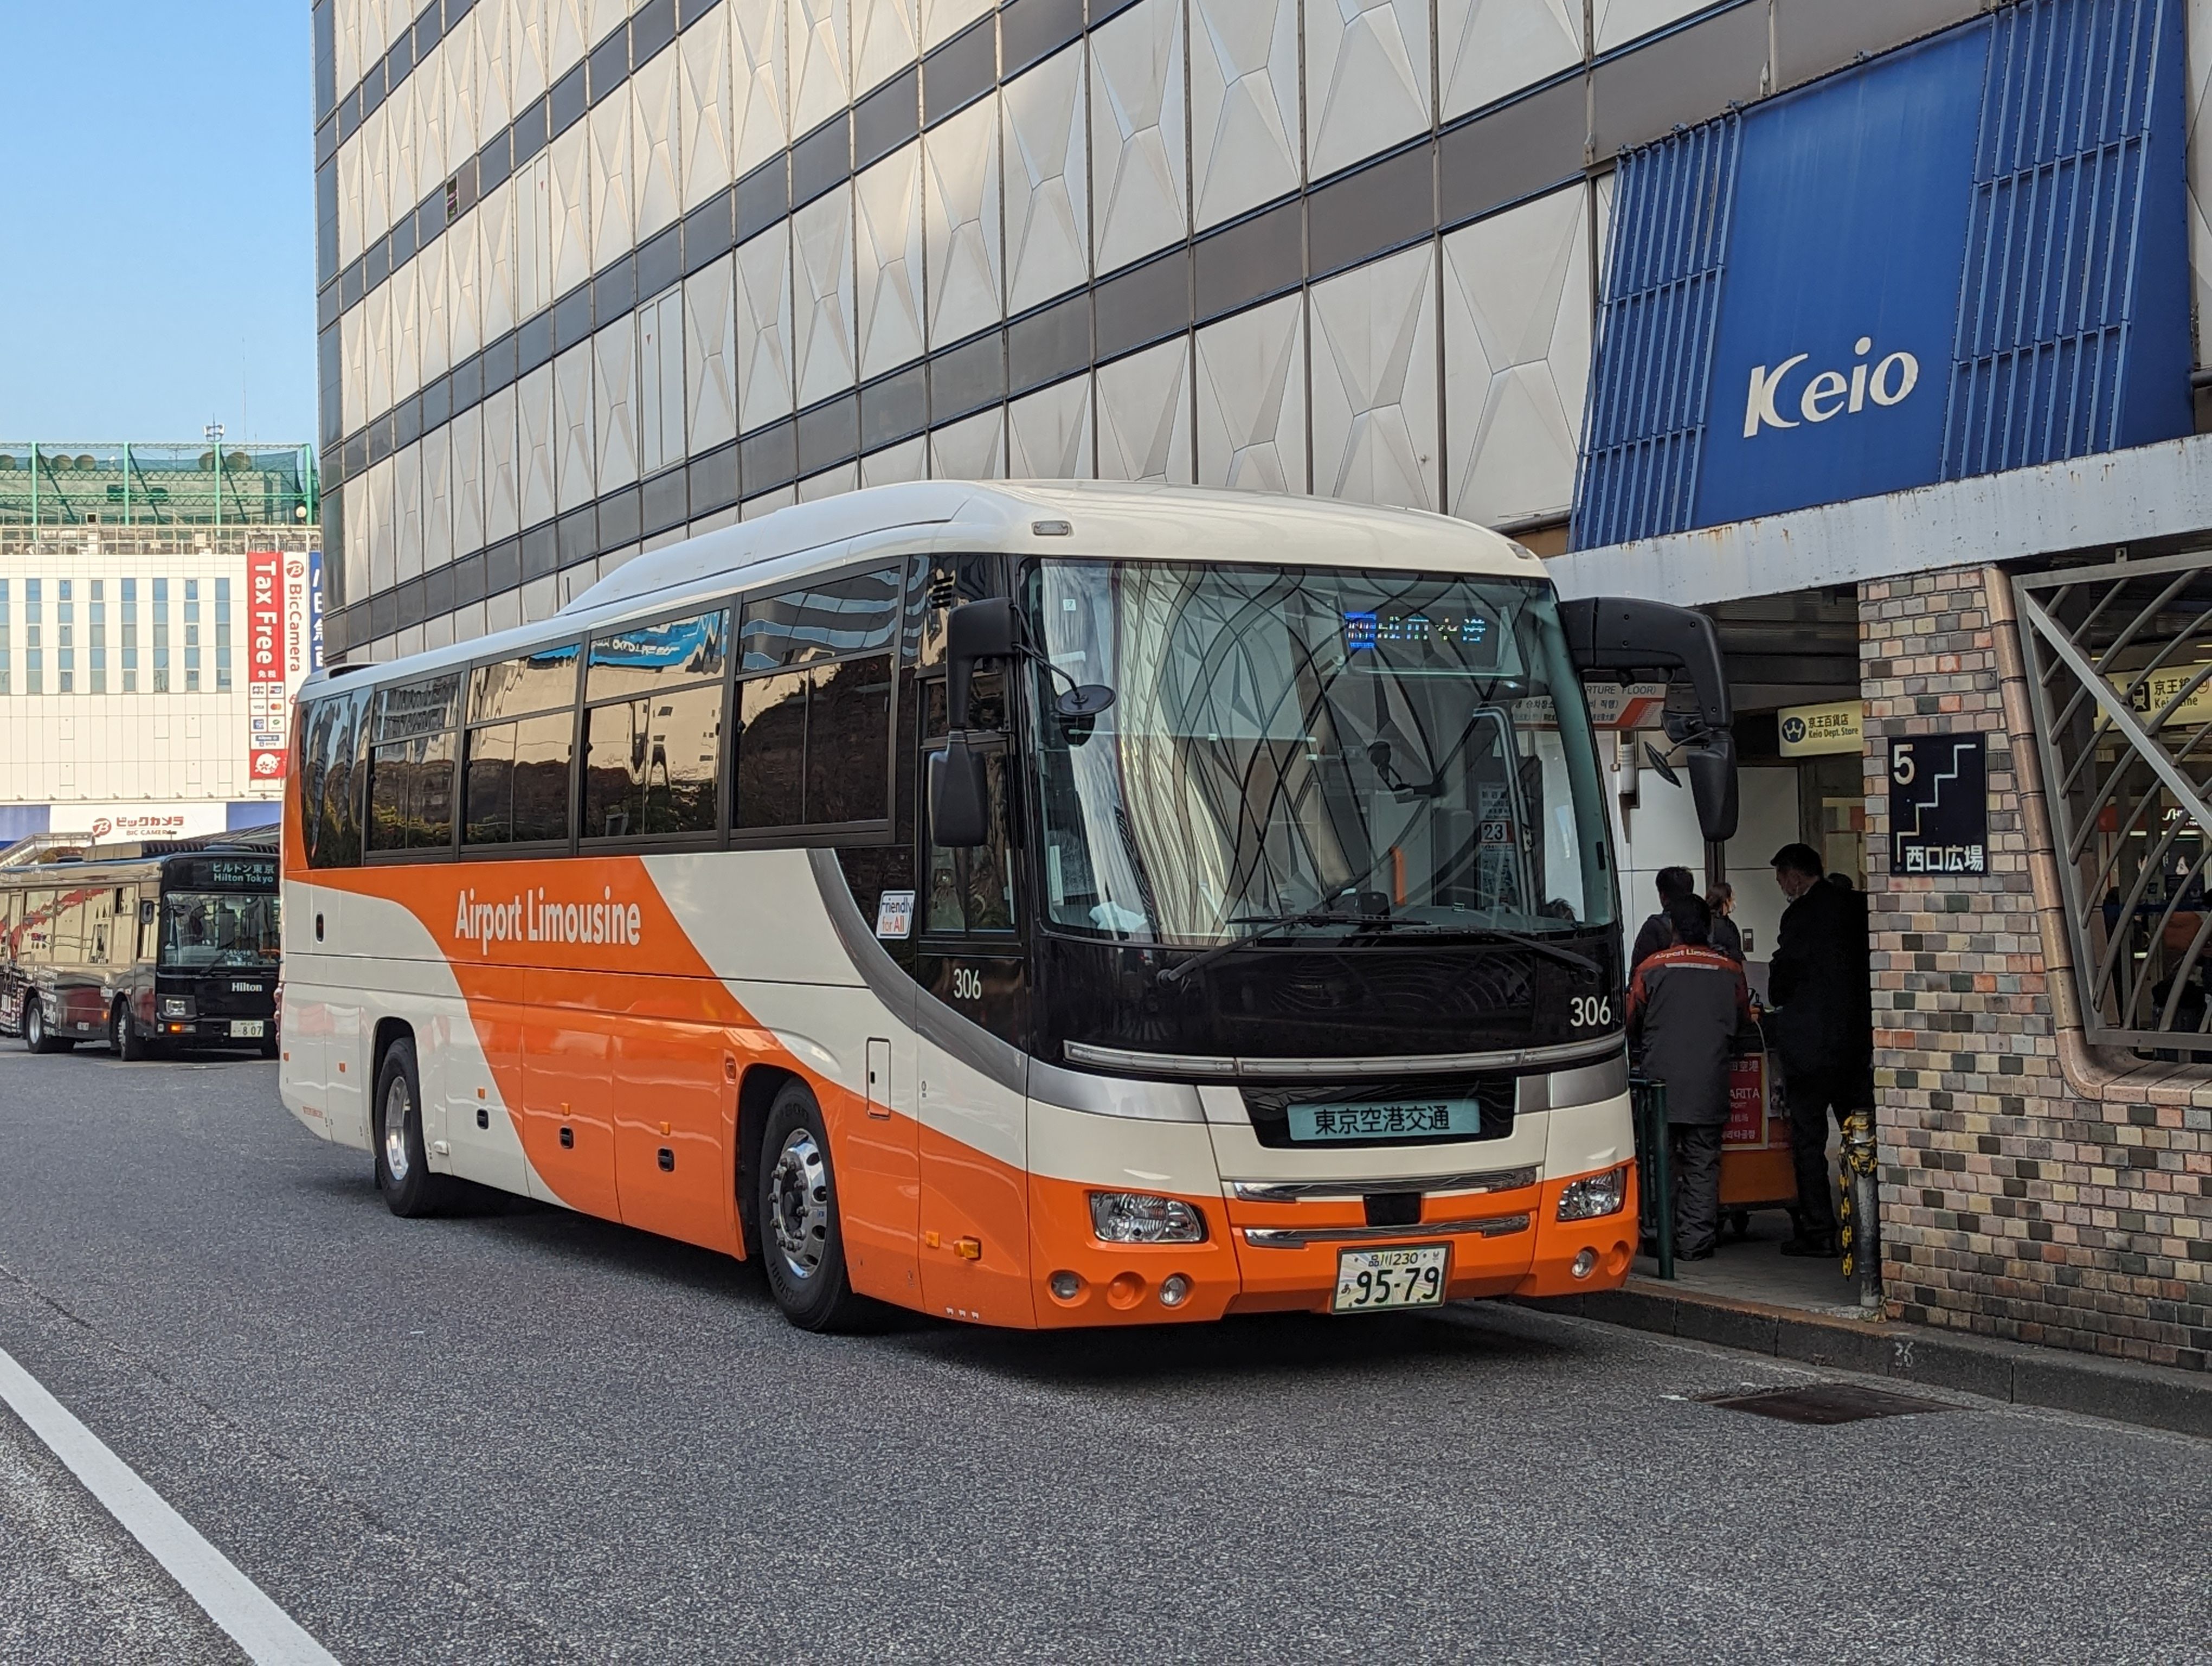 Airport Limousine Bus - Arrival at Narita Airport